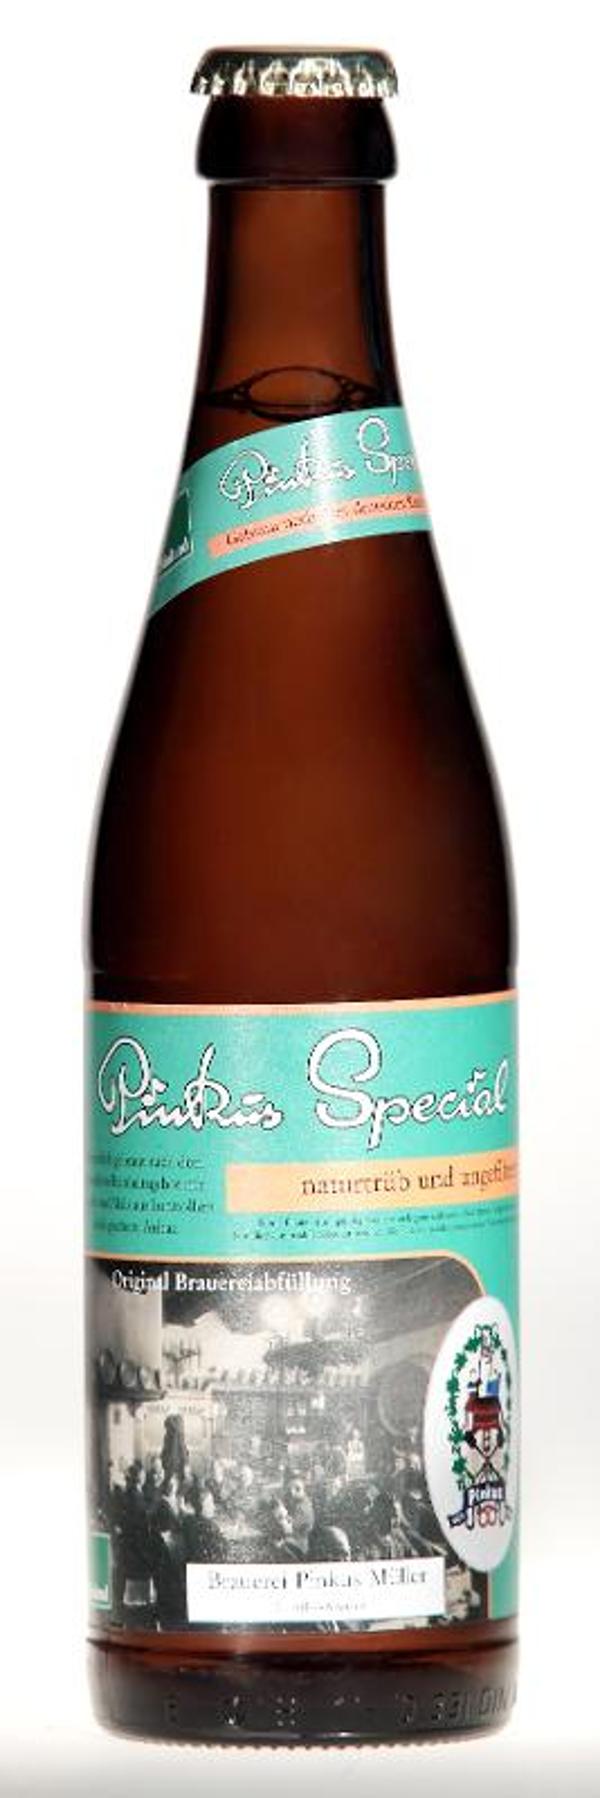 Produktfoto zu Pinkus Spezial Bier - 0,5l